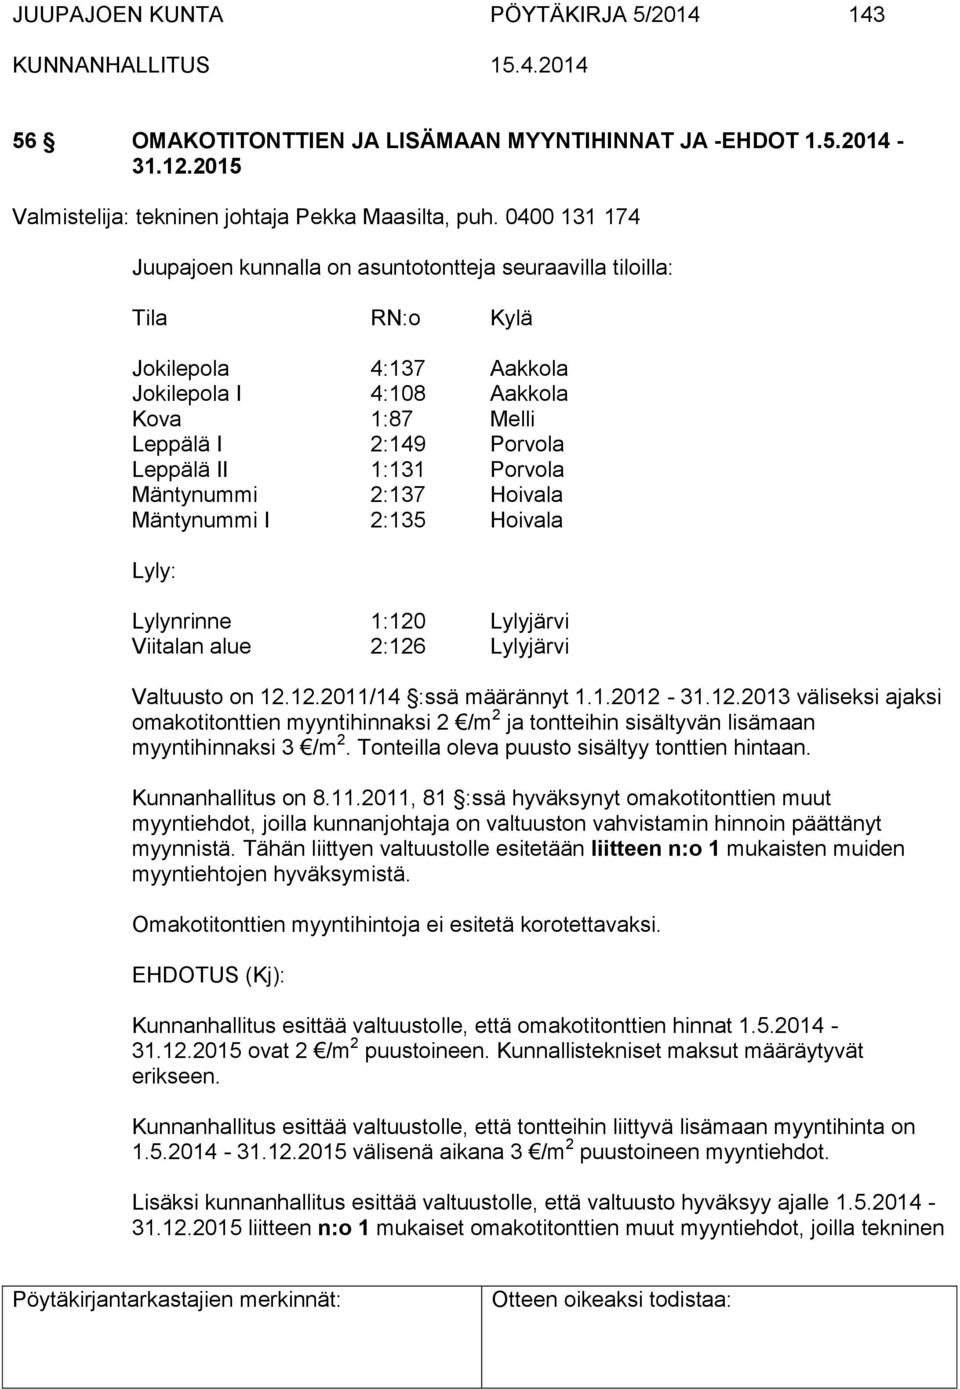 Porvola Mäntynummi 2:137 Hoivala Mäntynummi I 2:135 Hoivala Lyly: Lylynrinne 1:120 Lylyjärvi Viitalan alue 2:126 Lylyjärvi Valtuusto on 12.12.2011/14 :ssä määrännyt 1.1.2012-31.12.2013 väliseksi ajaksi omakotitonttien myyntihinnaksi 2 /m 2 ja tontteihin sisältyvän lisämaan myyntihinnaksi 3 /m 2.